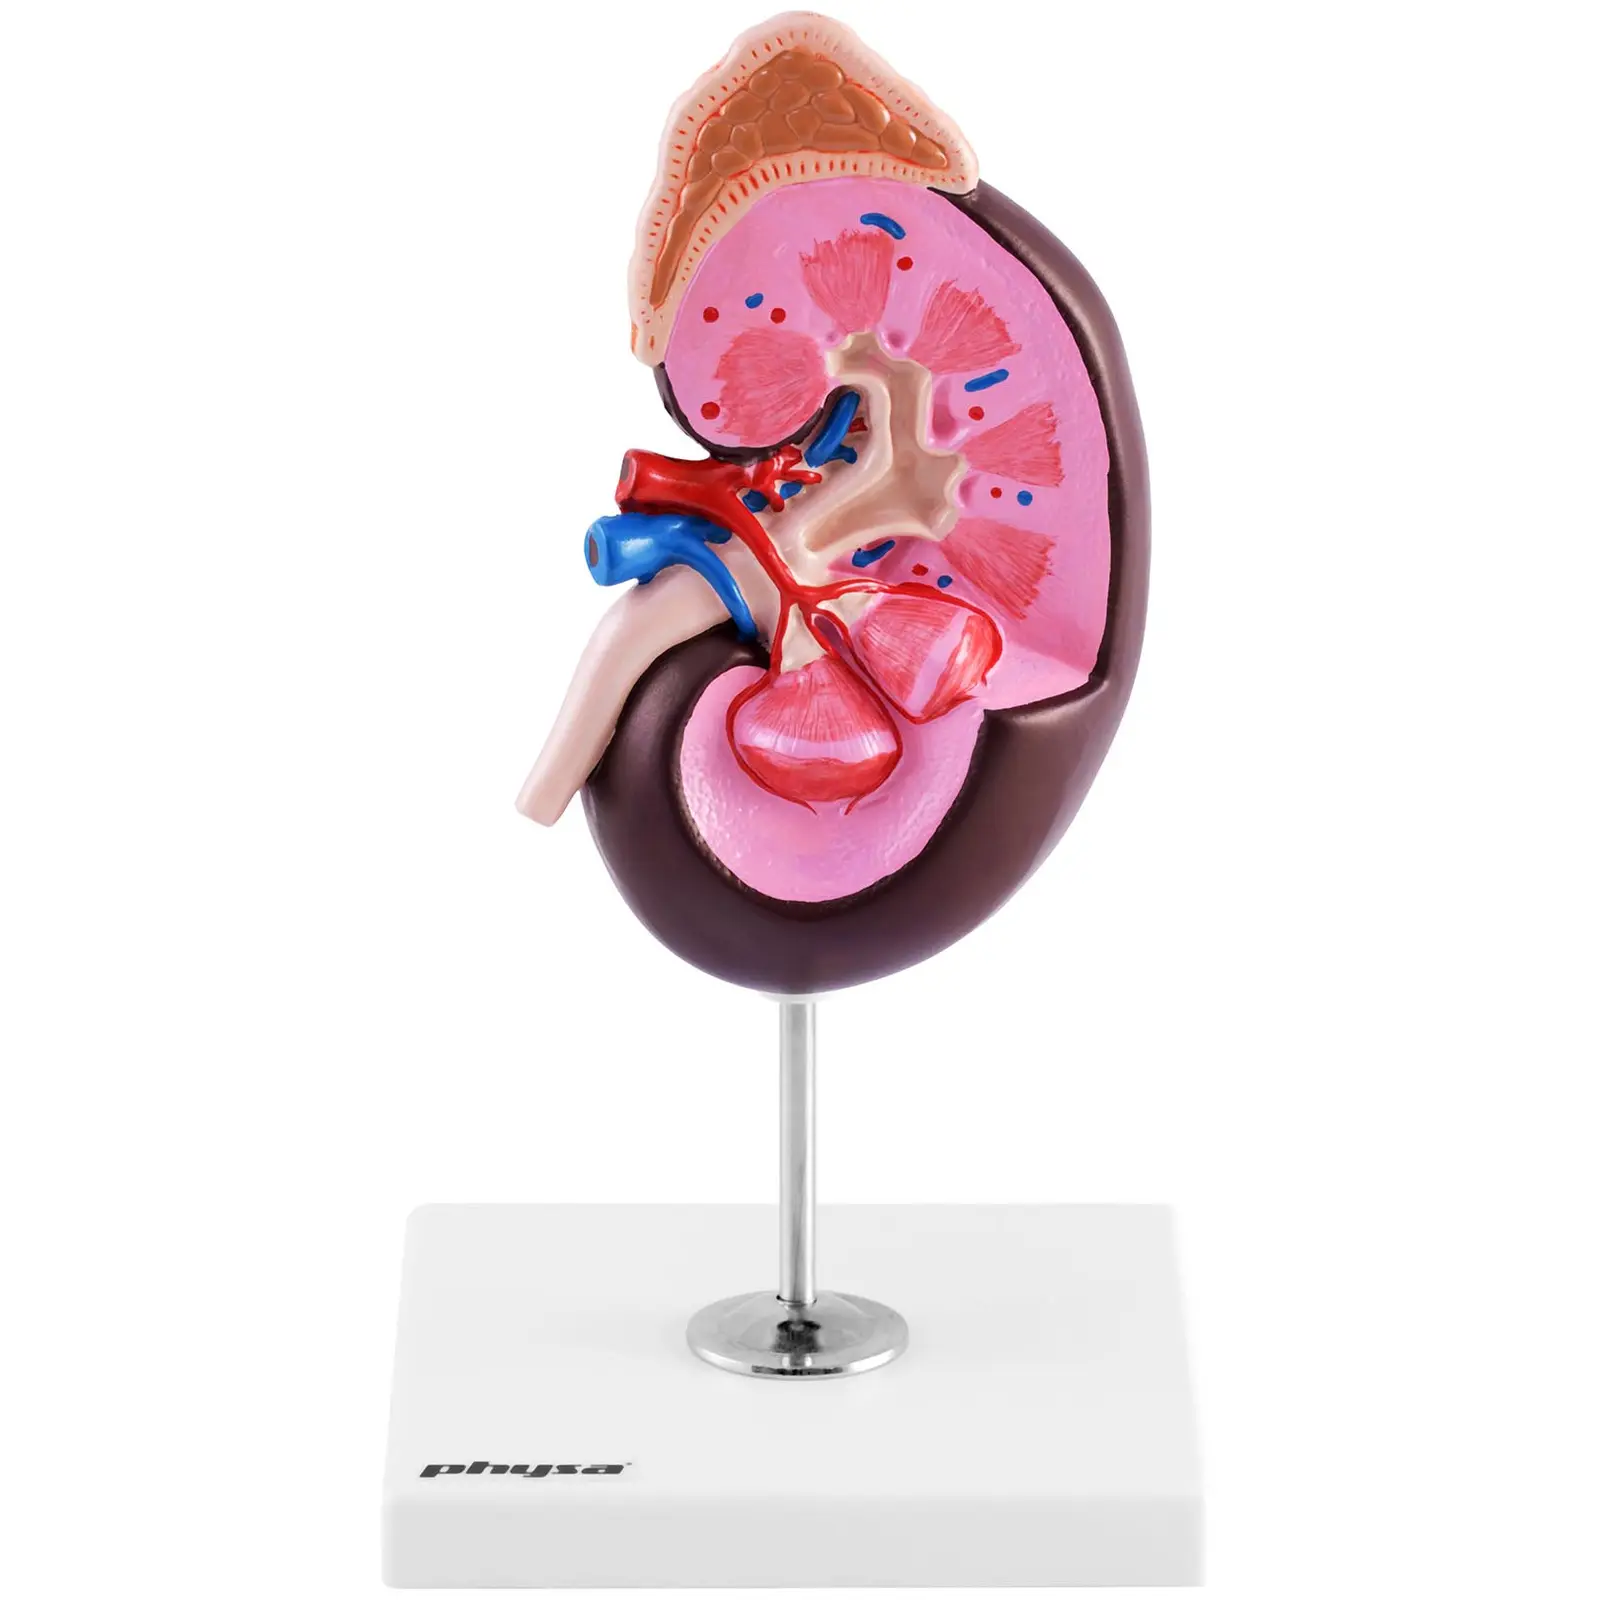 Modelo anatómico de riñón - aumento de 1,5